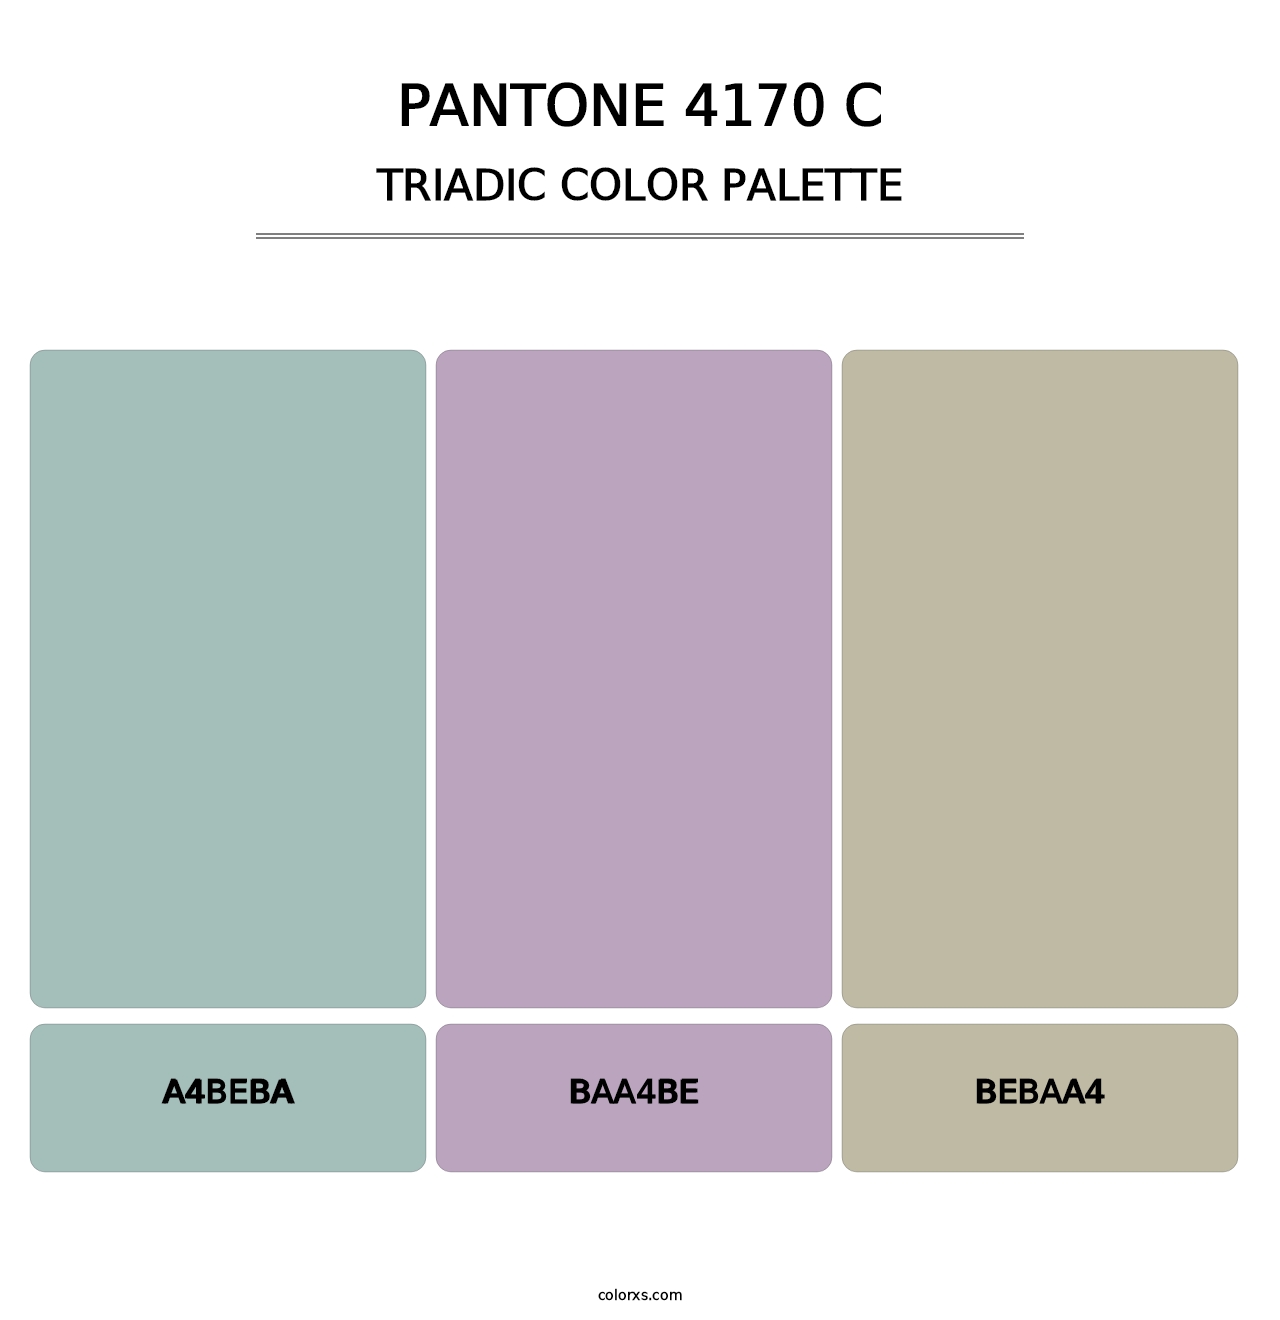 PANTONE 4170 C - Triadic Color Palette